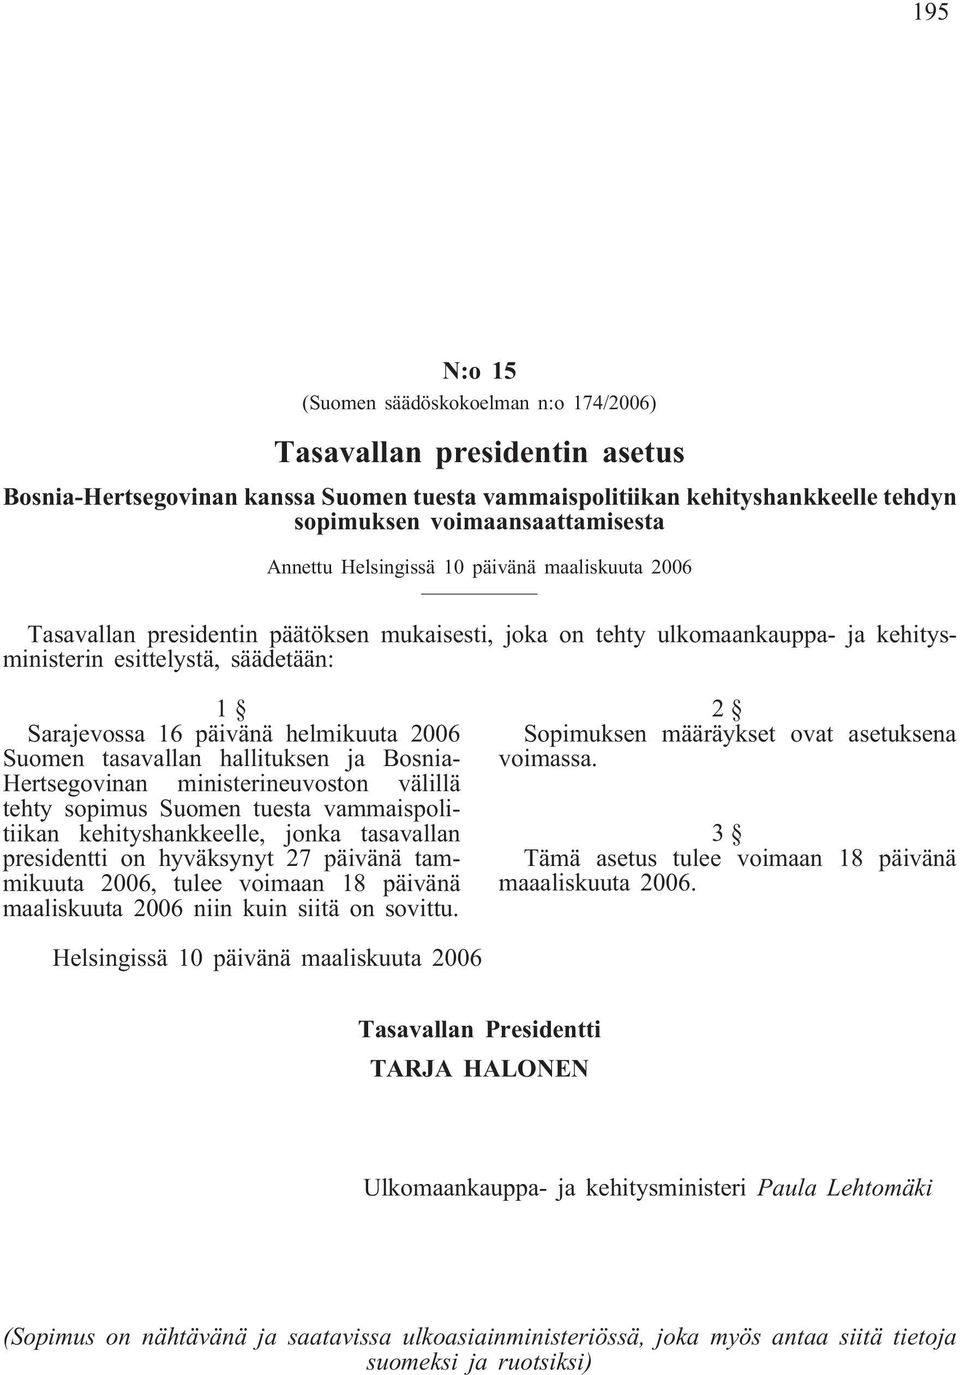 helmikuuta 2006 Suomen tasavallan hallituksen ja Bosnia- Hertsegovinan ministerineuvoston välillä tehty sopimus Suomen tuesta vammaispolitiikan kehityshankkeelle, jonka tasavallan presidentti on